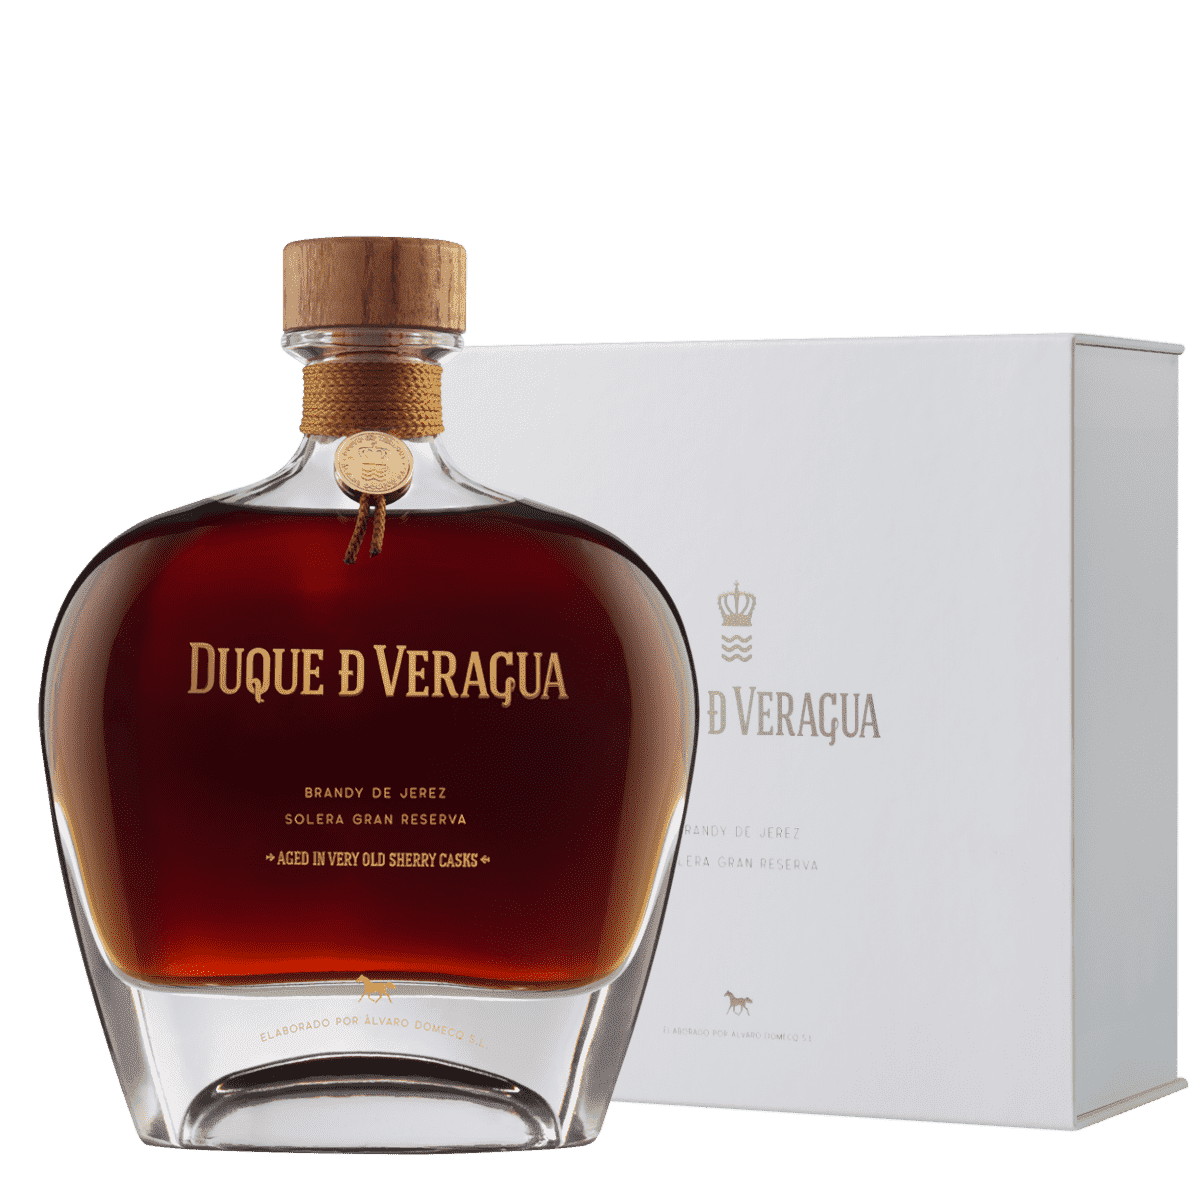 Brandy de Jerez DUQUE de VERAGUA Solera Reserva, Álvaro Domecq in gift packaging